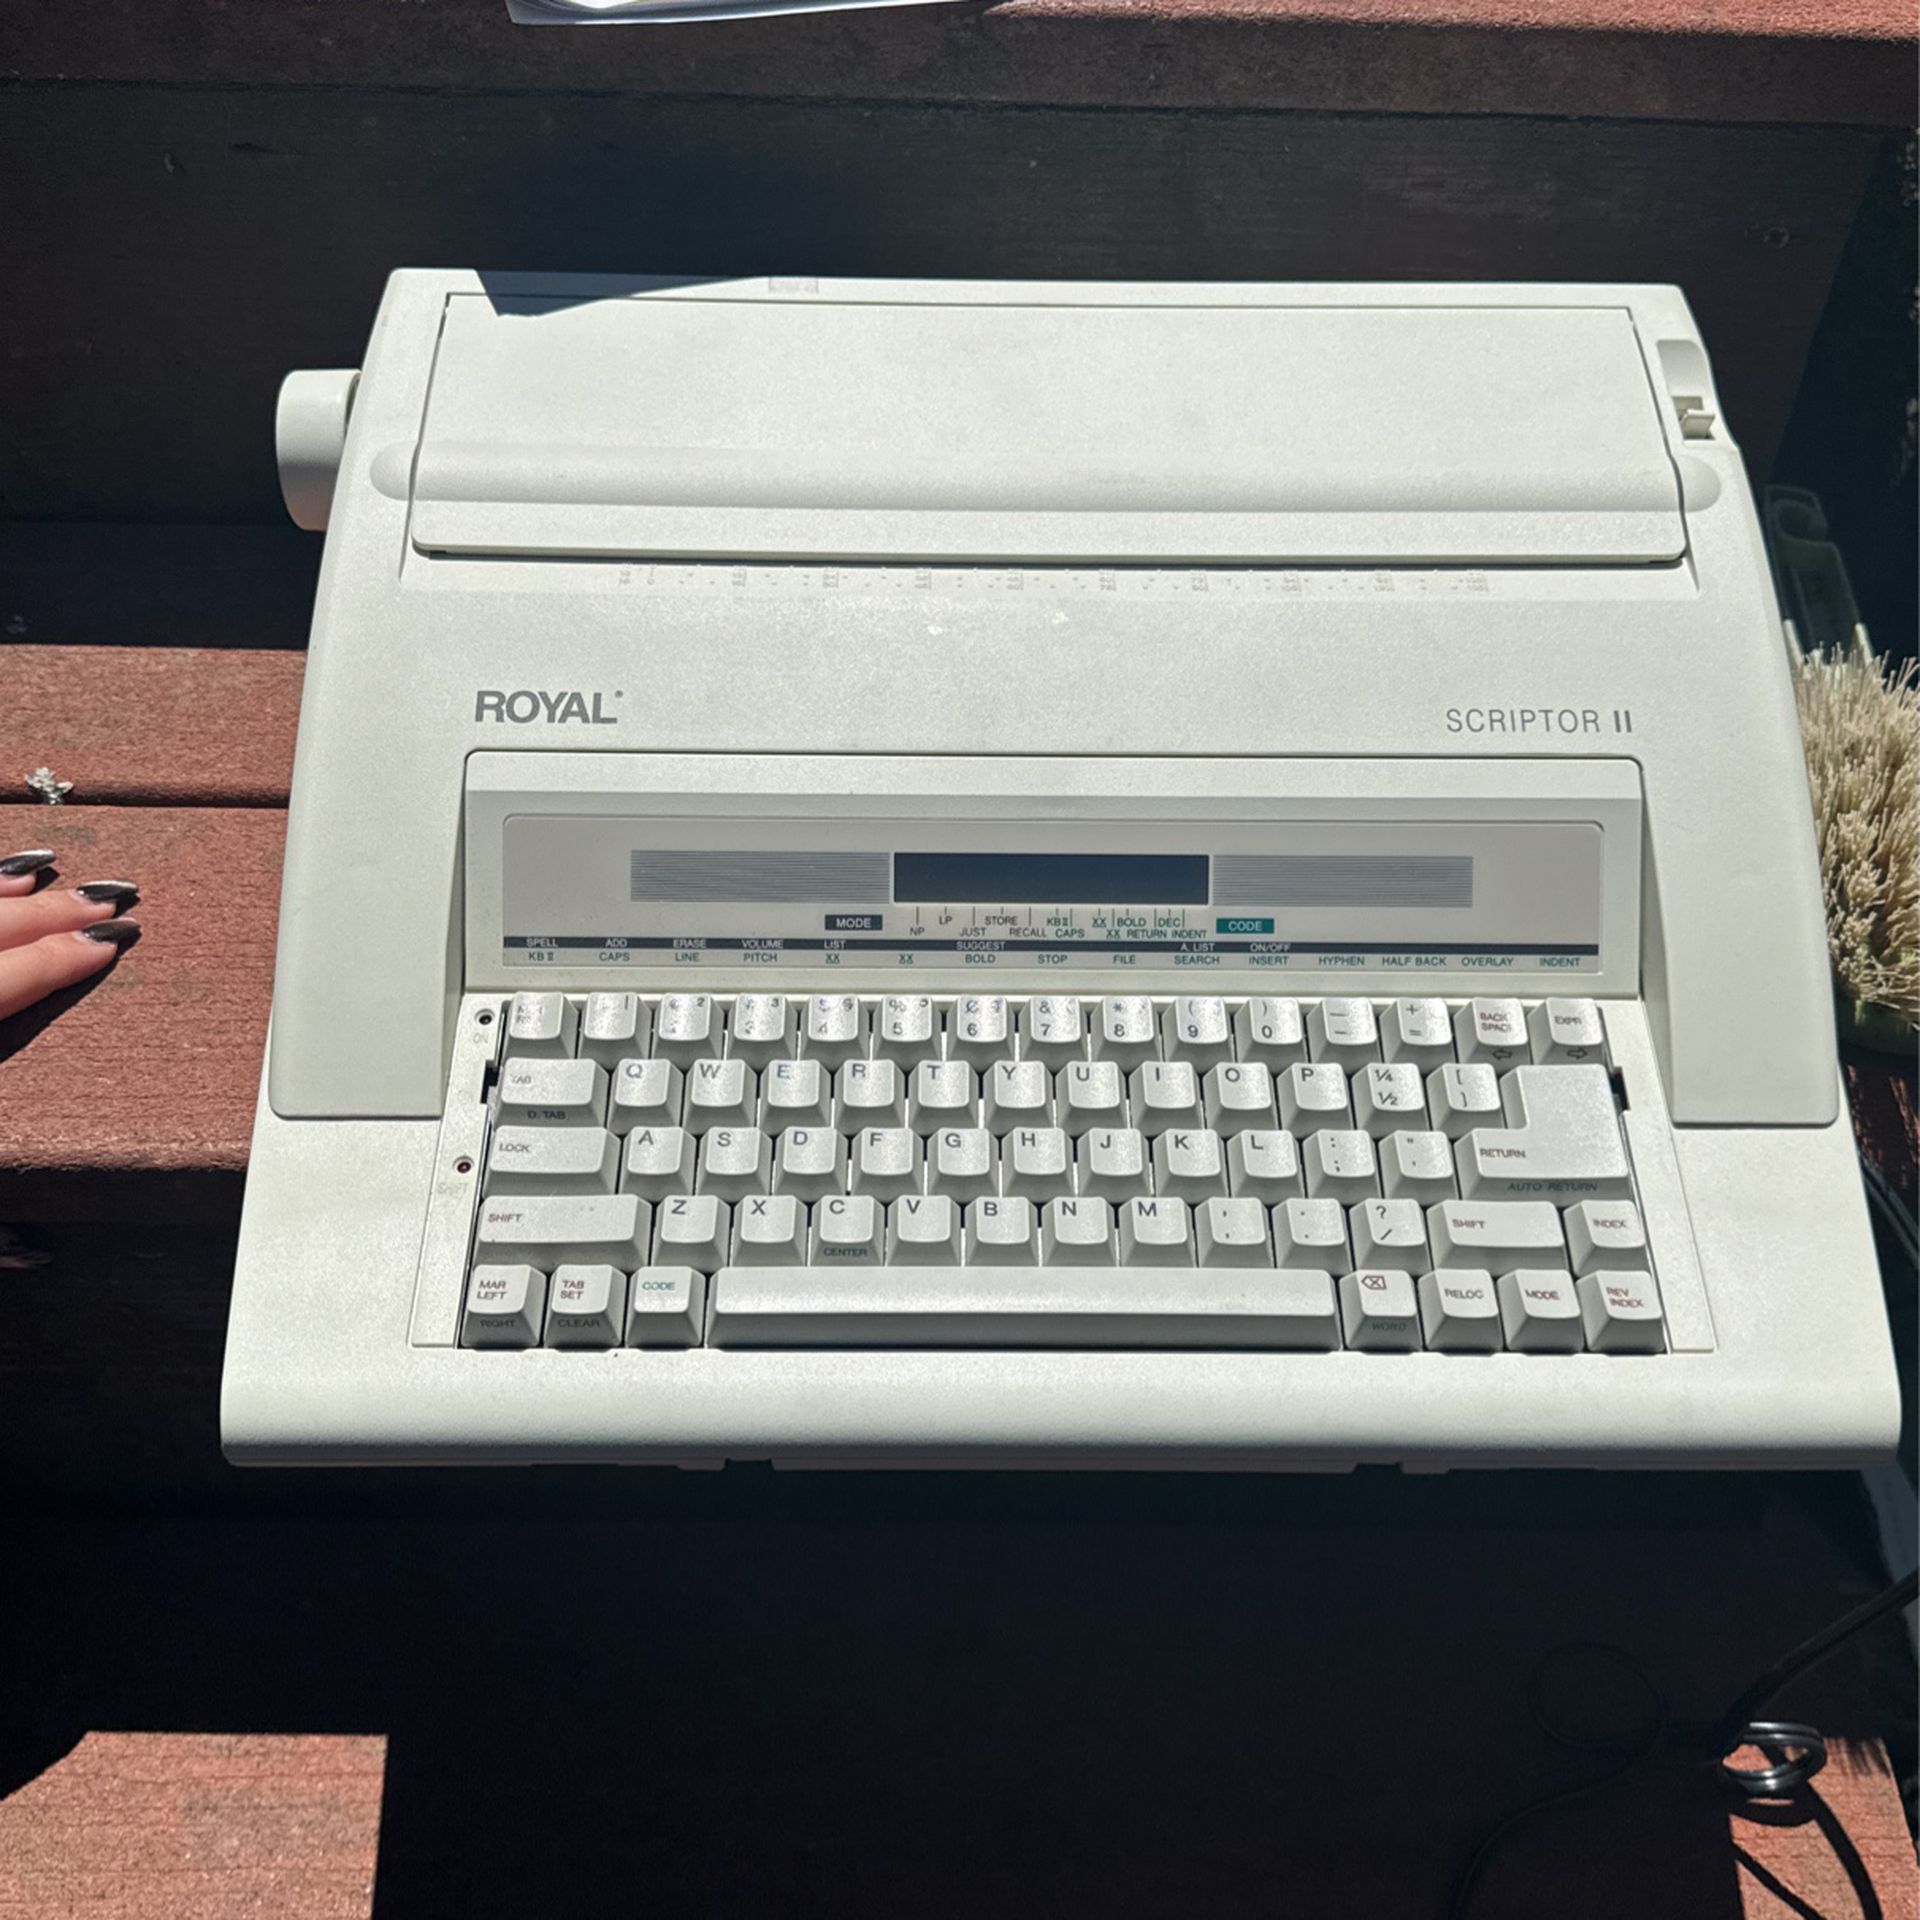 ROYAL TYPEWRITER (Portable Electronic Typewriter With Display) Scriptor II